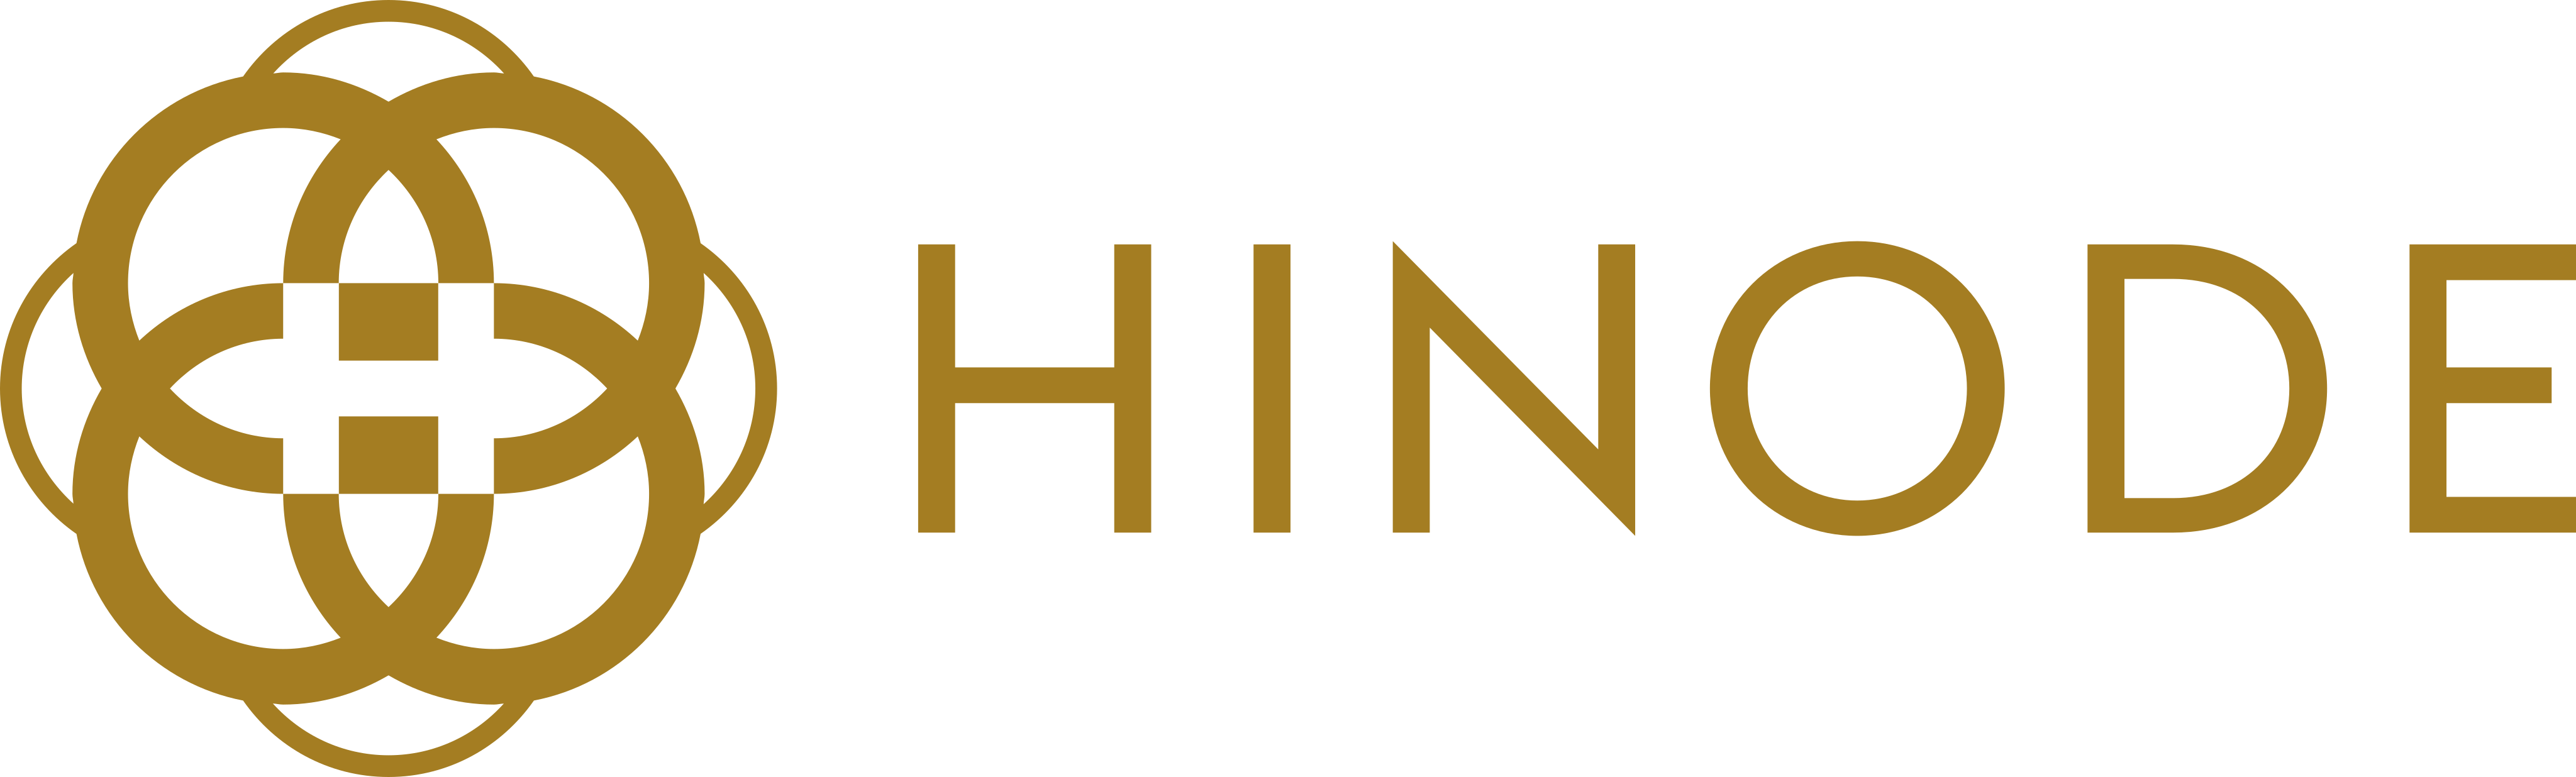 hinode-logo-1